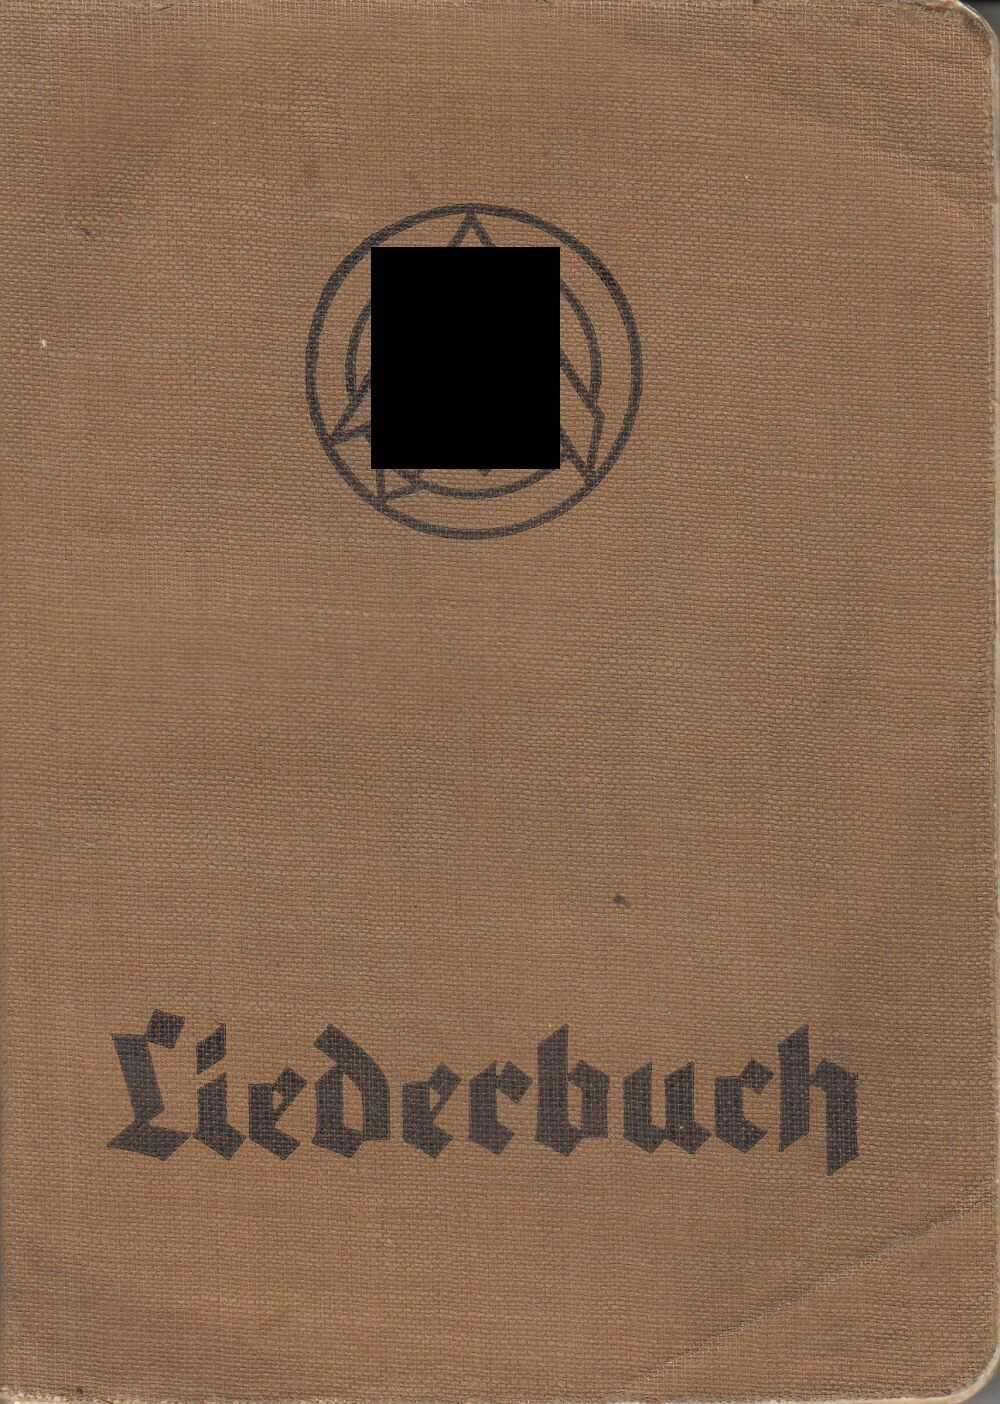 SA - Liederbuch - Ganzleinenausgabe aus dem Jahr 1938